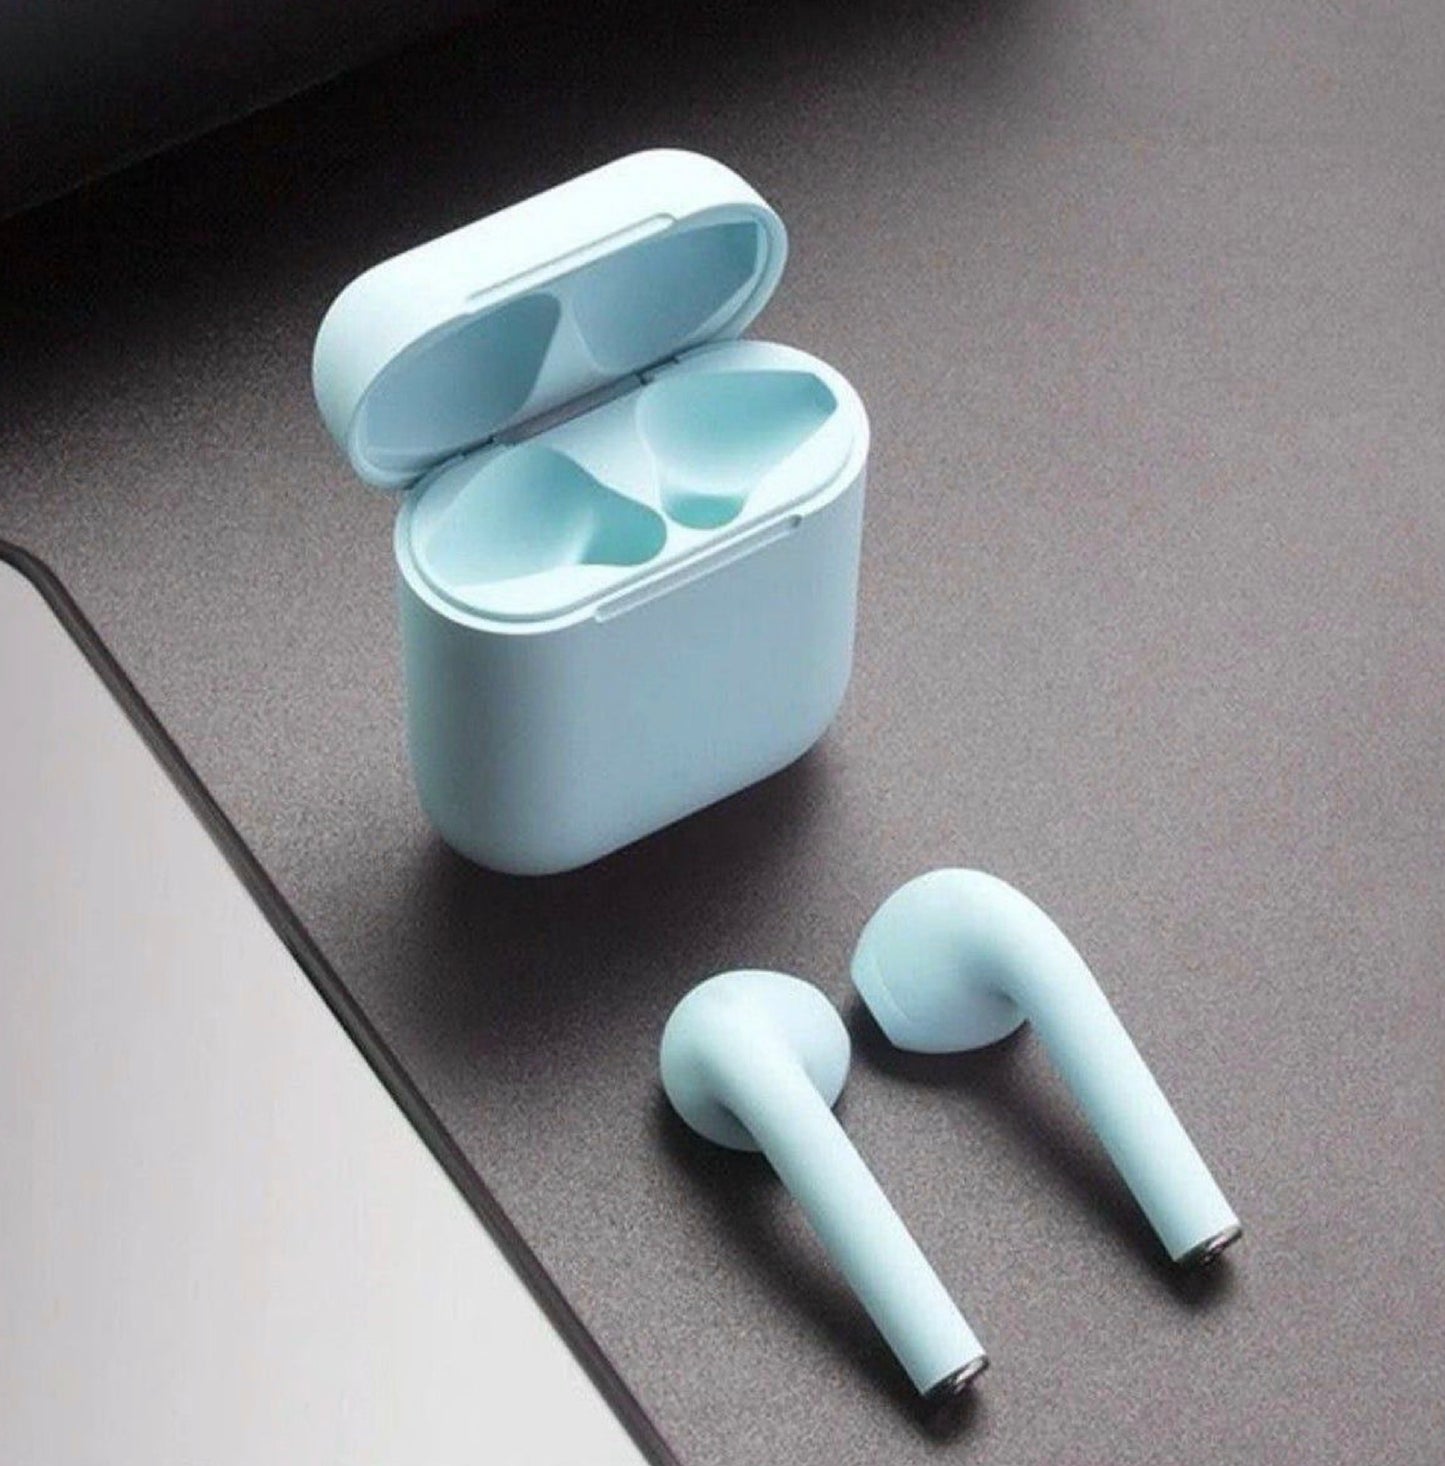 Bluetooth oordopjes licht blauw | HYKS Everything you need